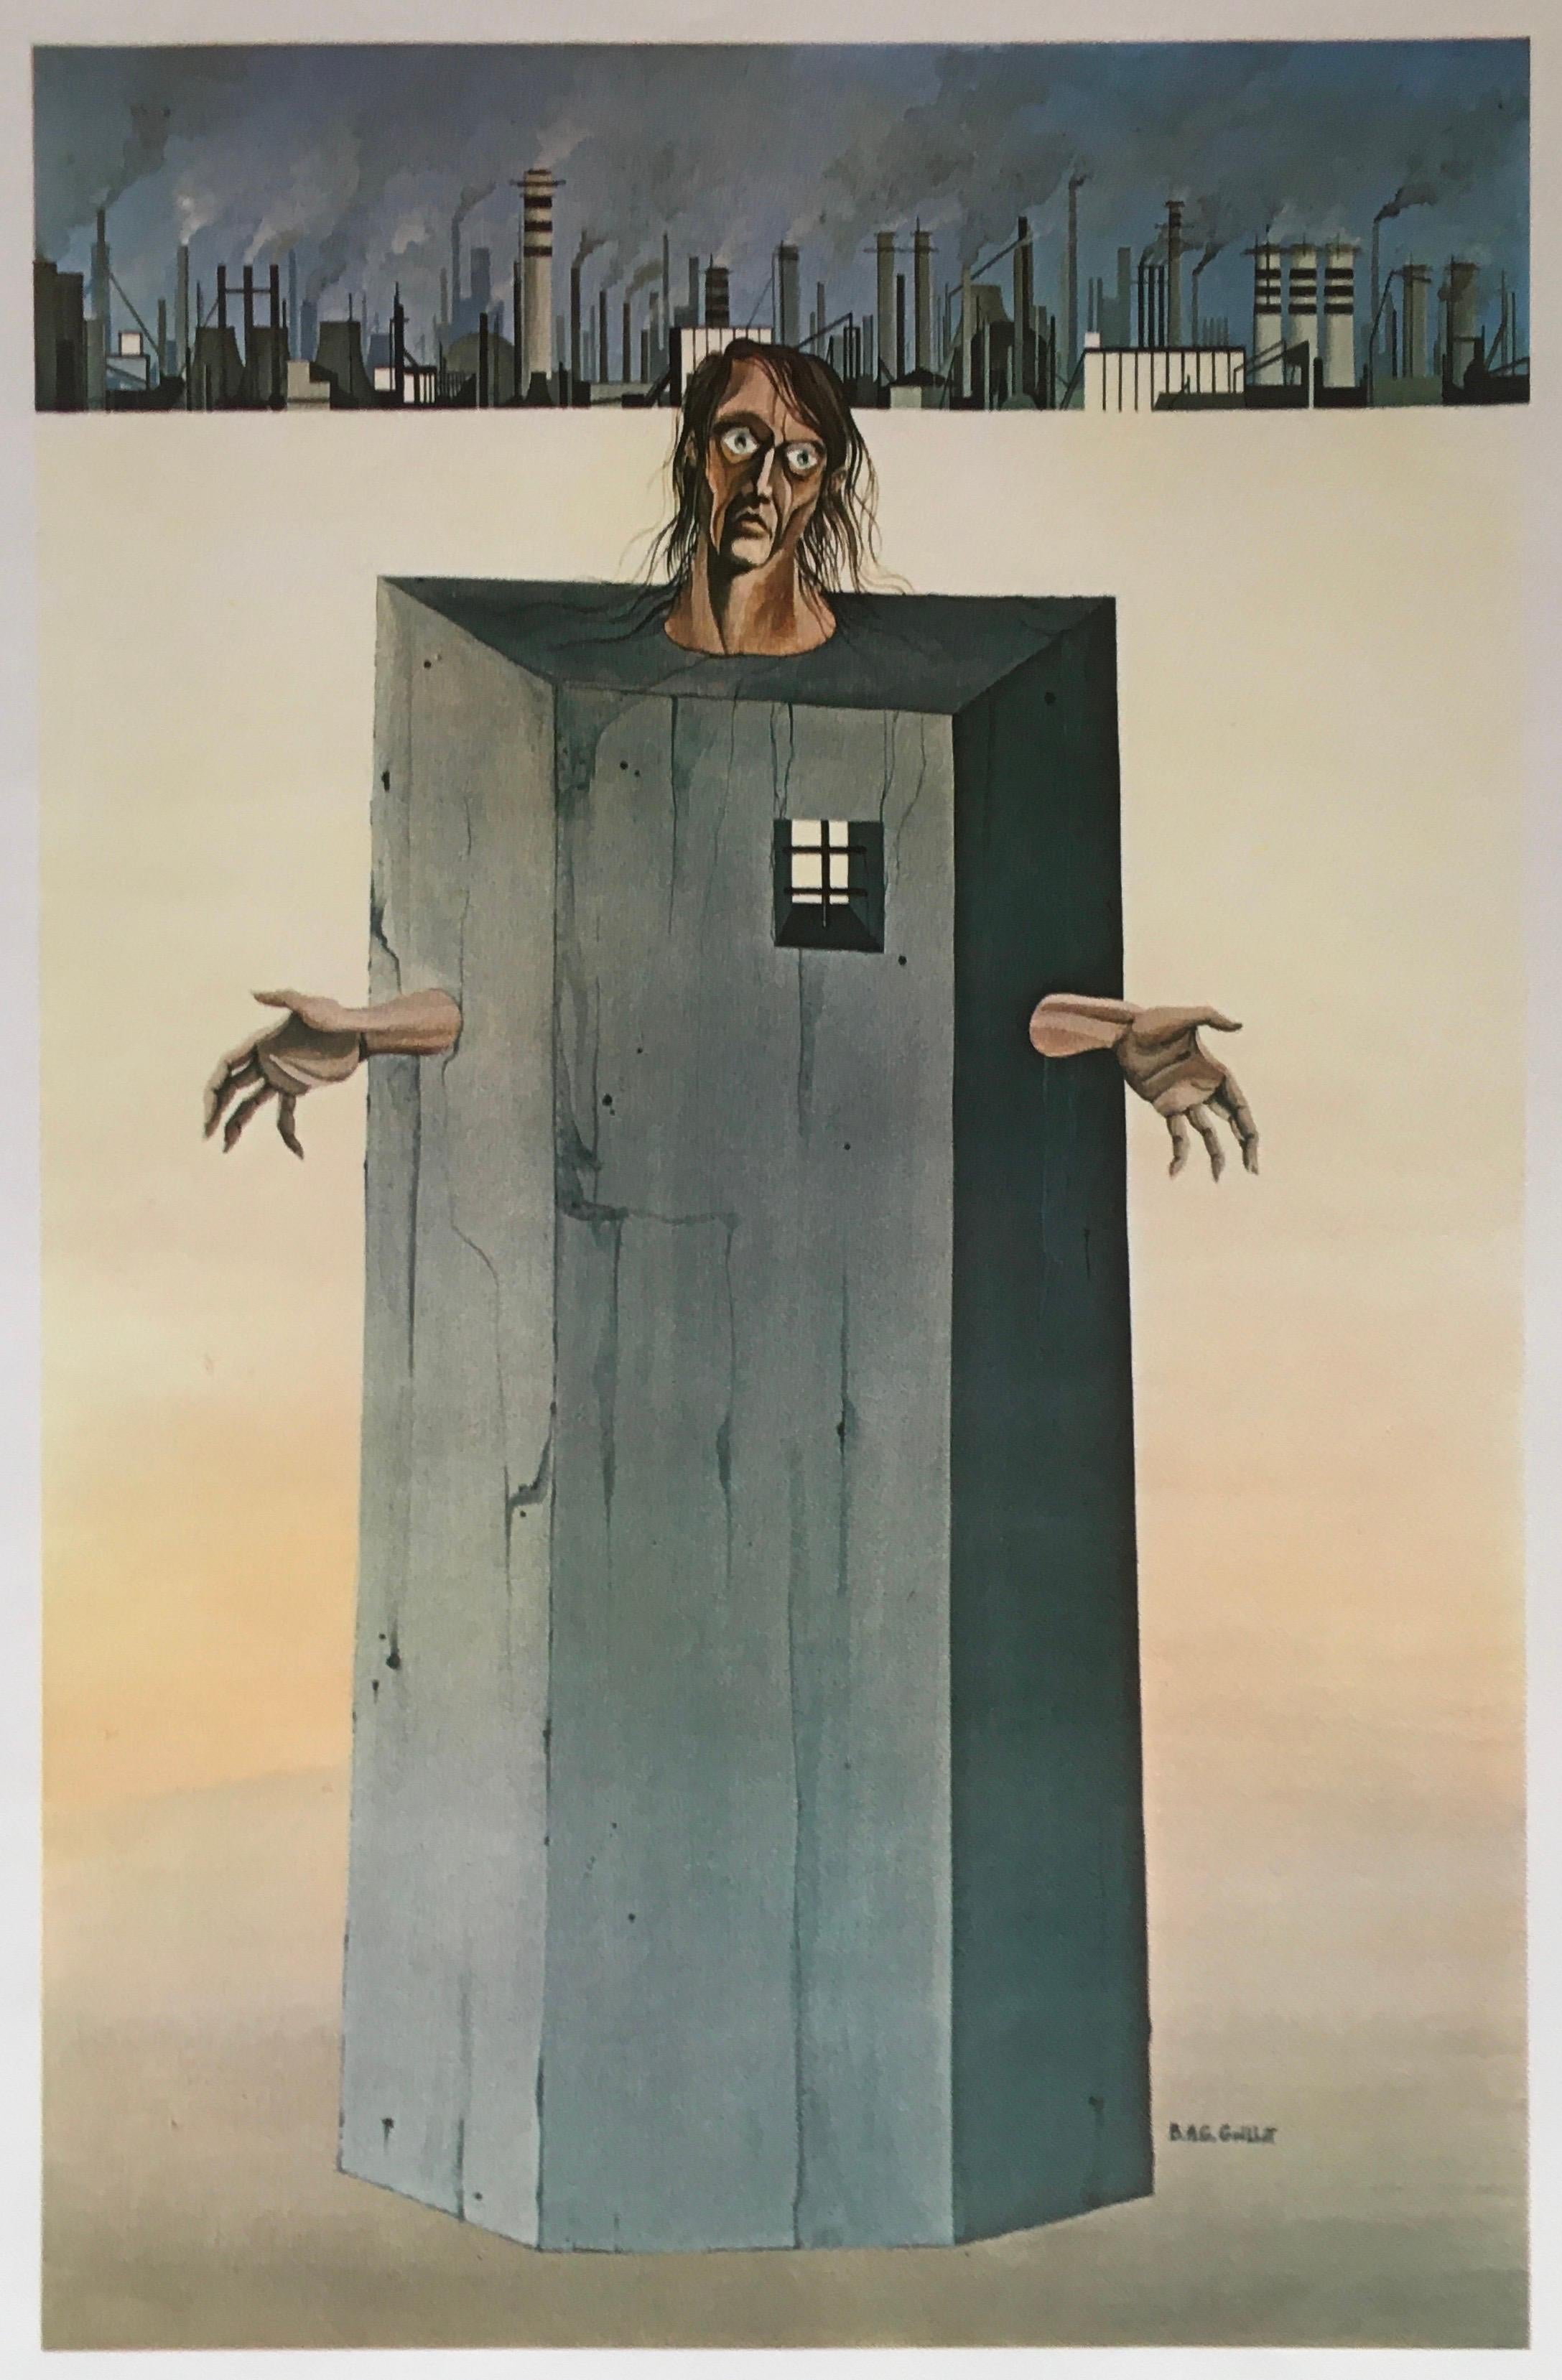 Original-Kunstplakat aus der Mitte des Jahrhunderts, das das interessante Werk des französischen Künstlers B.A.G. Guillot zeigt, der ein geschickter Surrealist war. 
Die Kunstplakate und anderen Kreationen von B.A.G. Guillot erinnern an viele Werke